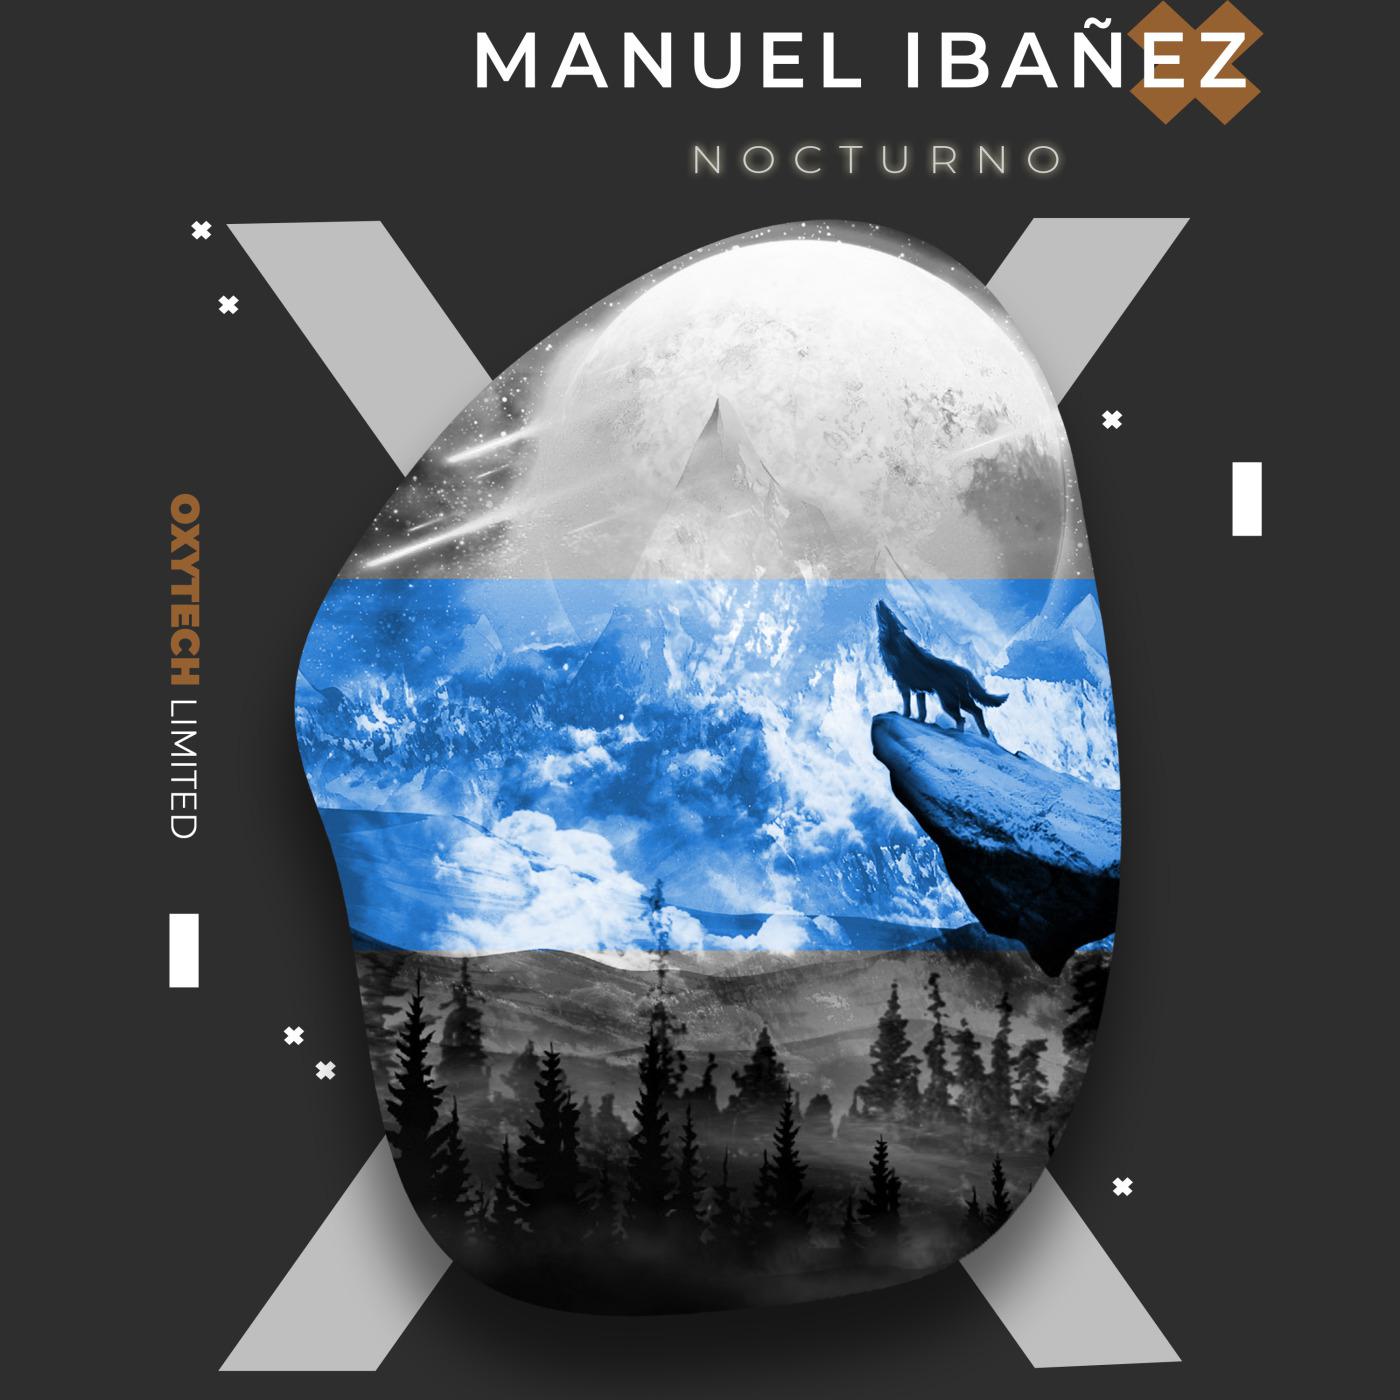 Manuel Ibañez - Nocturnos